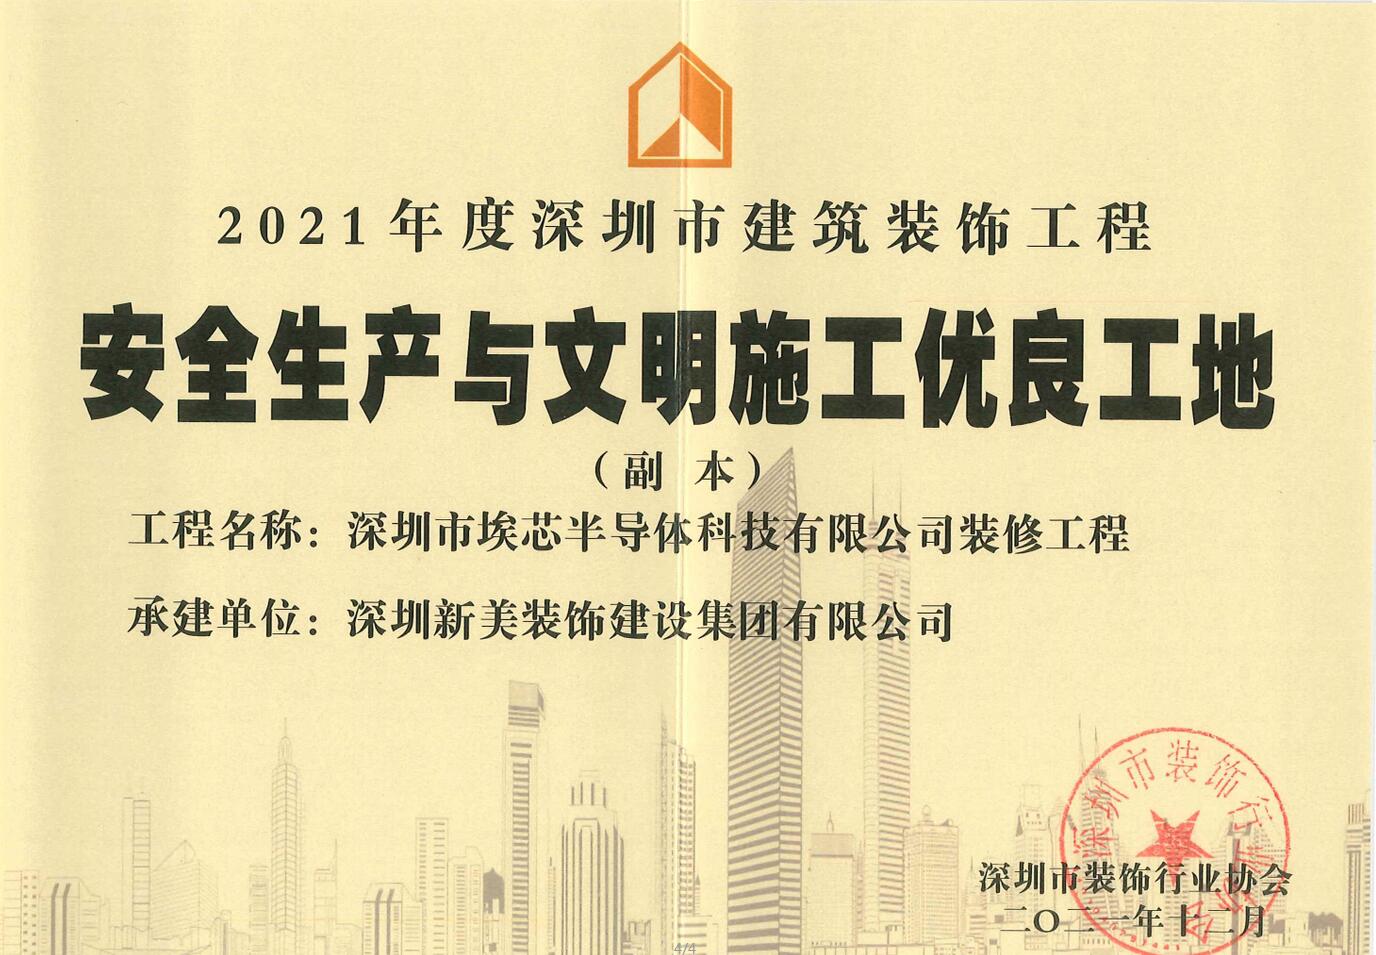 榮譽 | 新美集團榮獲“2021年度深圳市建筑裝飾工程安全生產與文明施工優良工地”稱號	